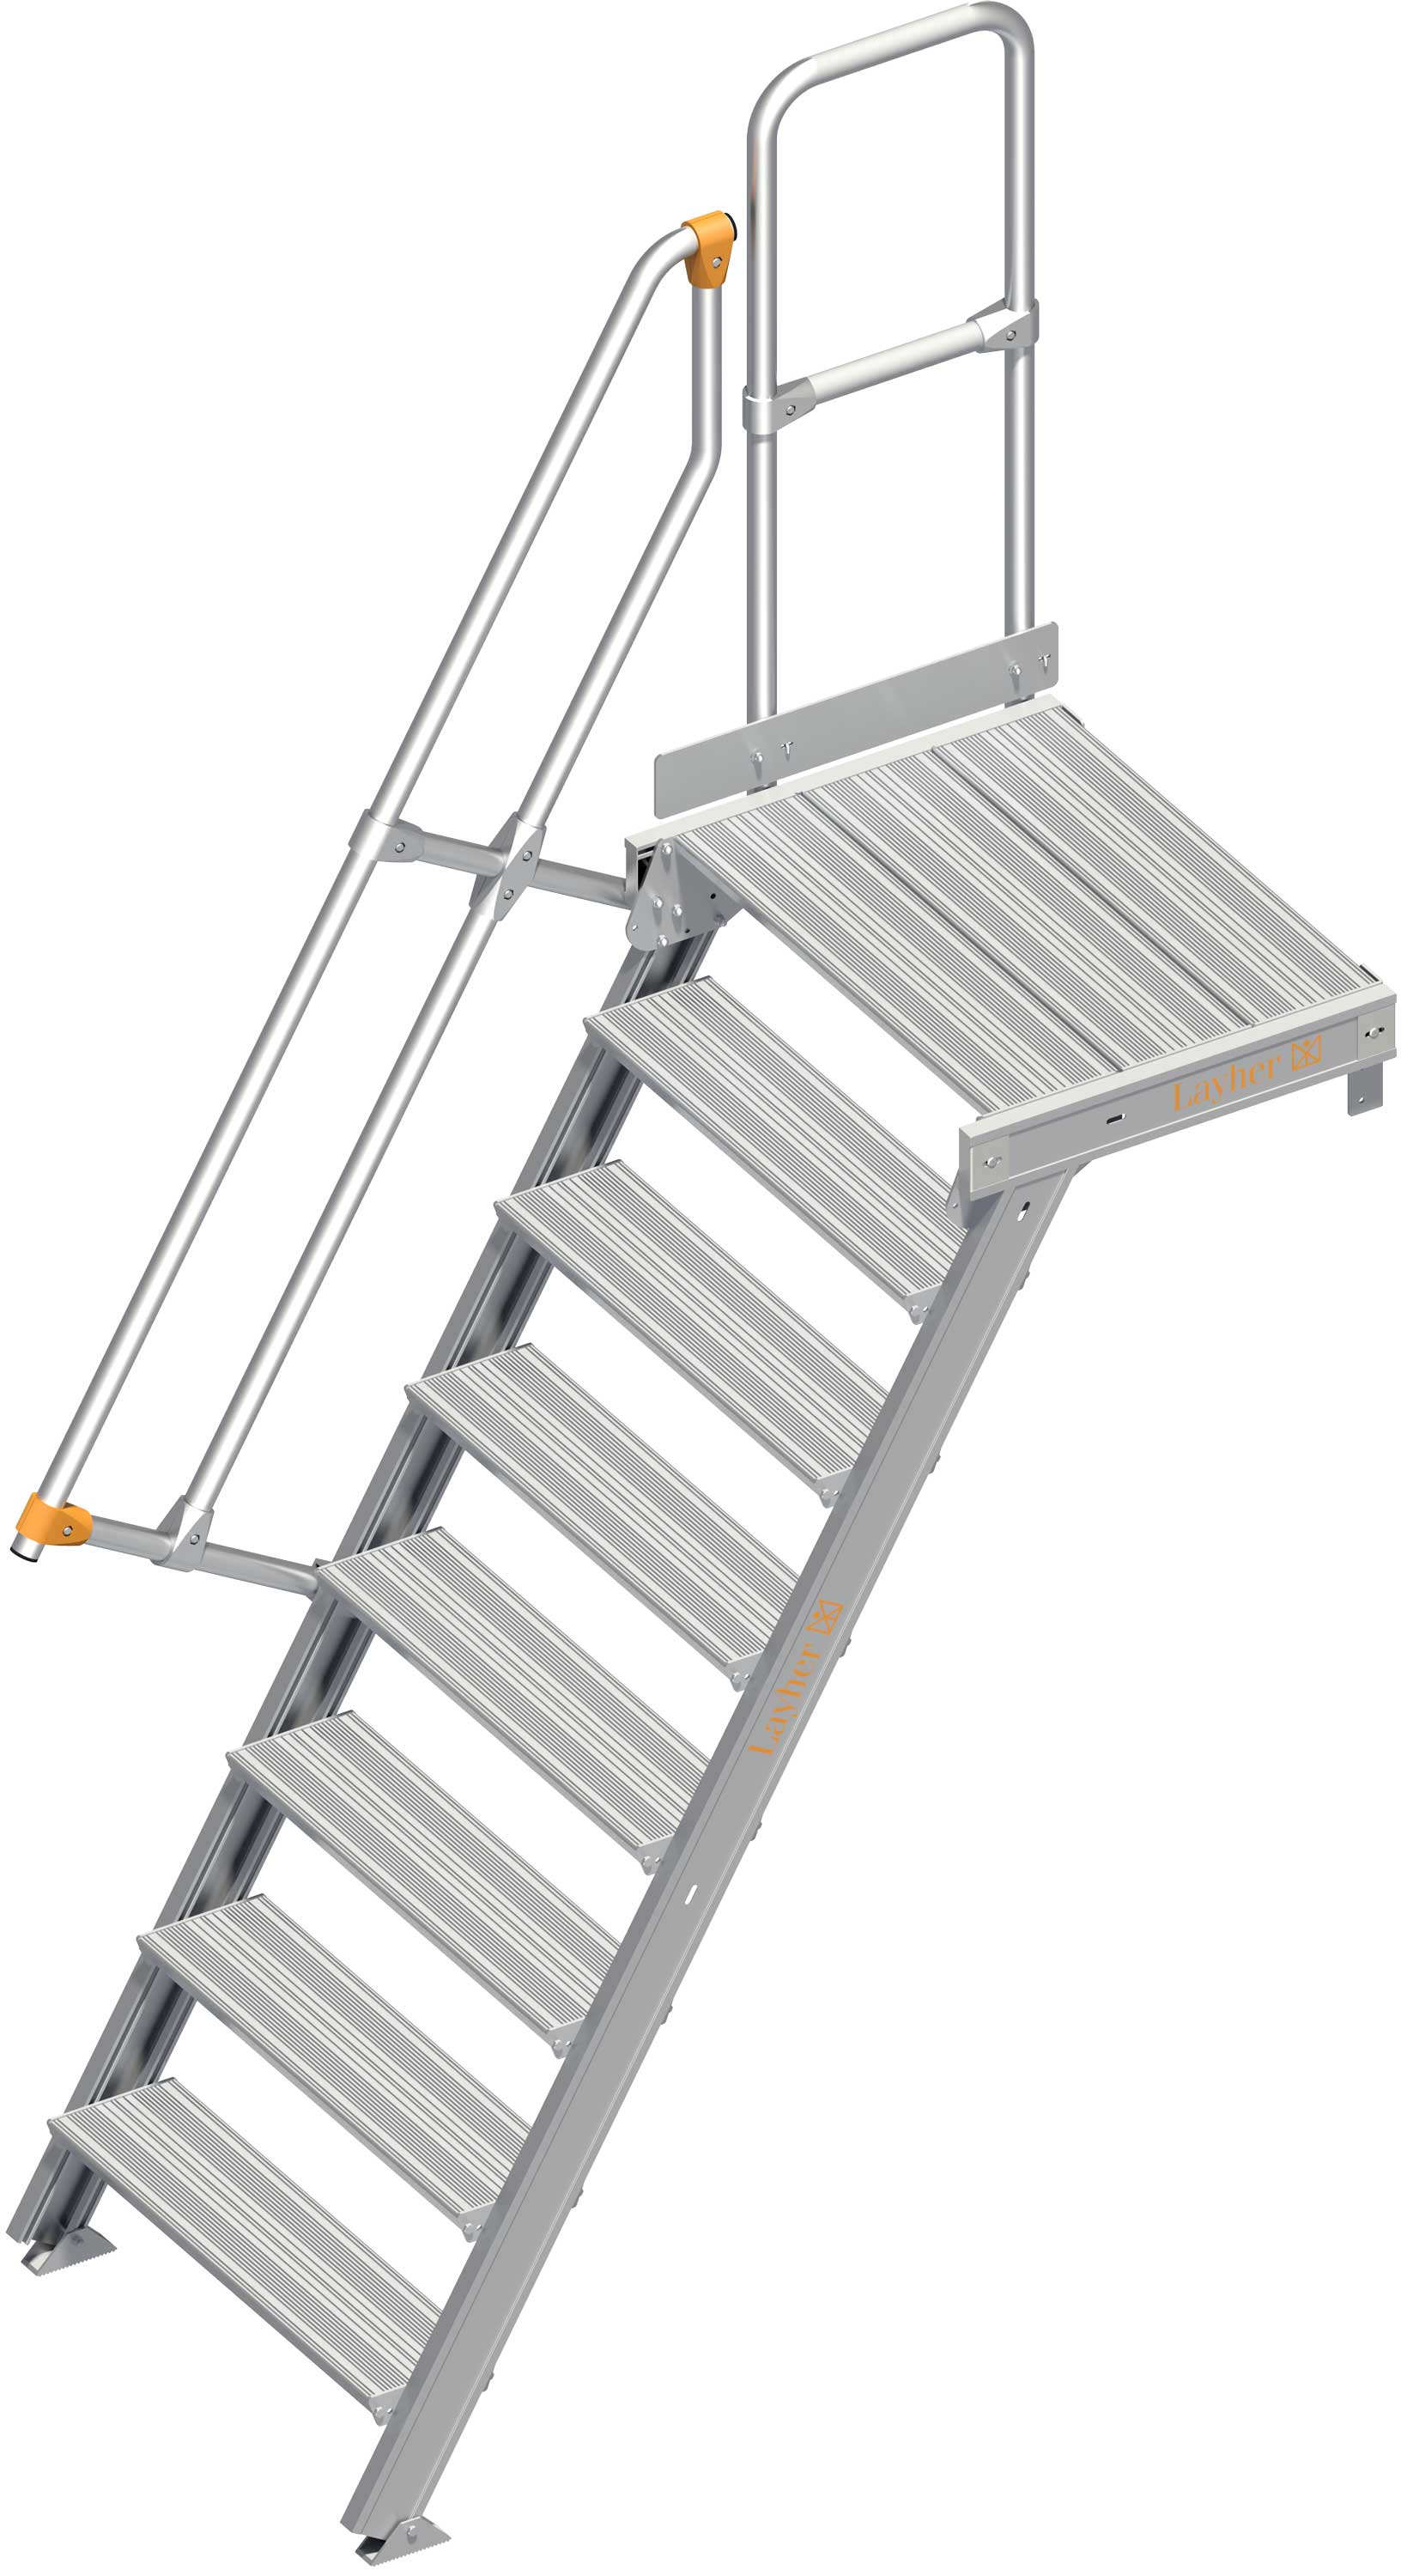 Layher Plattformtreppe 60° SG 8 Stufen - 800 mm breit